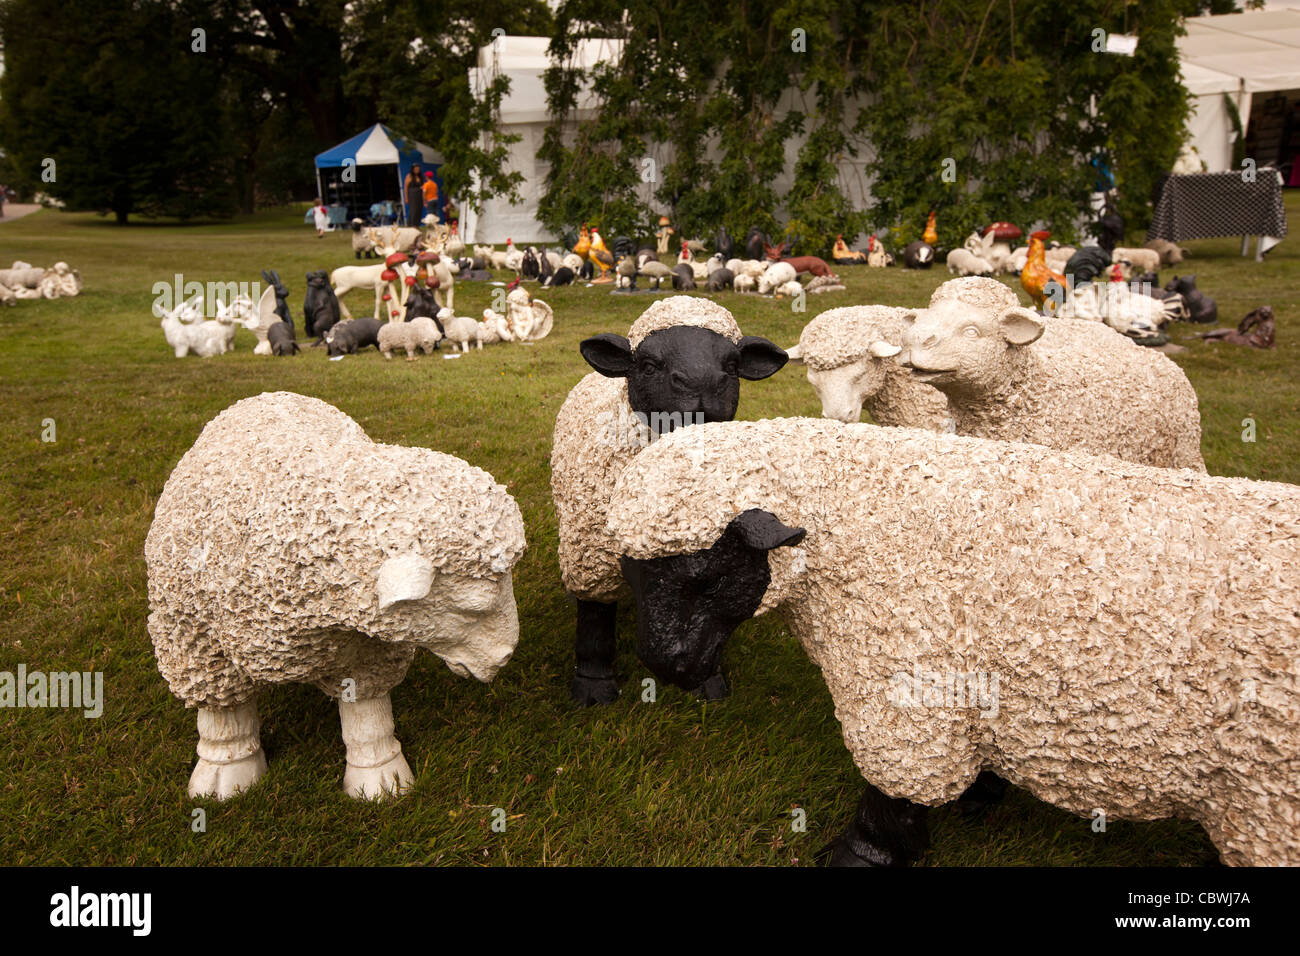 Royaume-uni, Angleterre, Bedfordshire, Woburn Abbey Garden Show, grand jardin ornements de moutons en céramique Banque D'Images